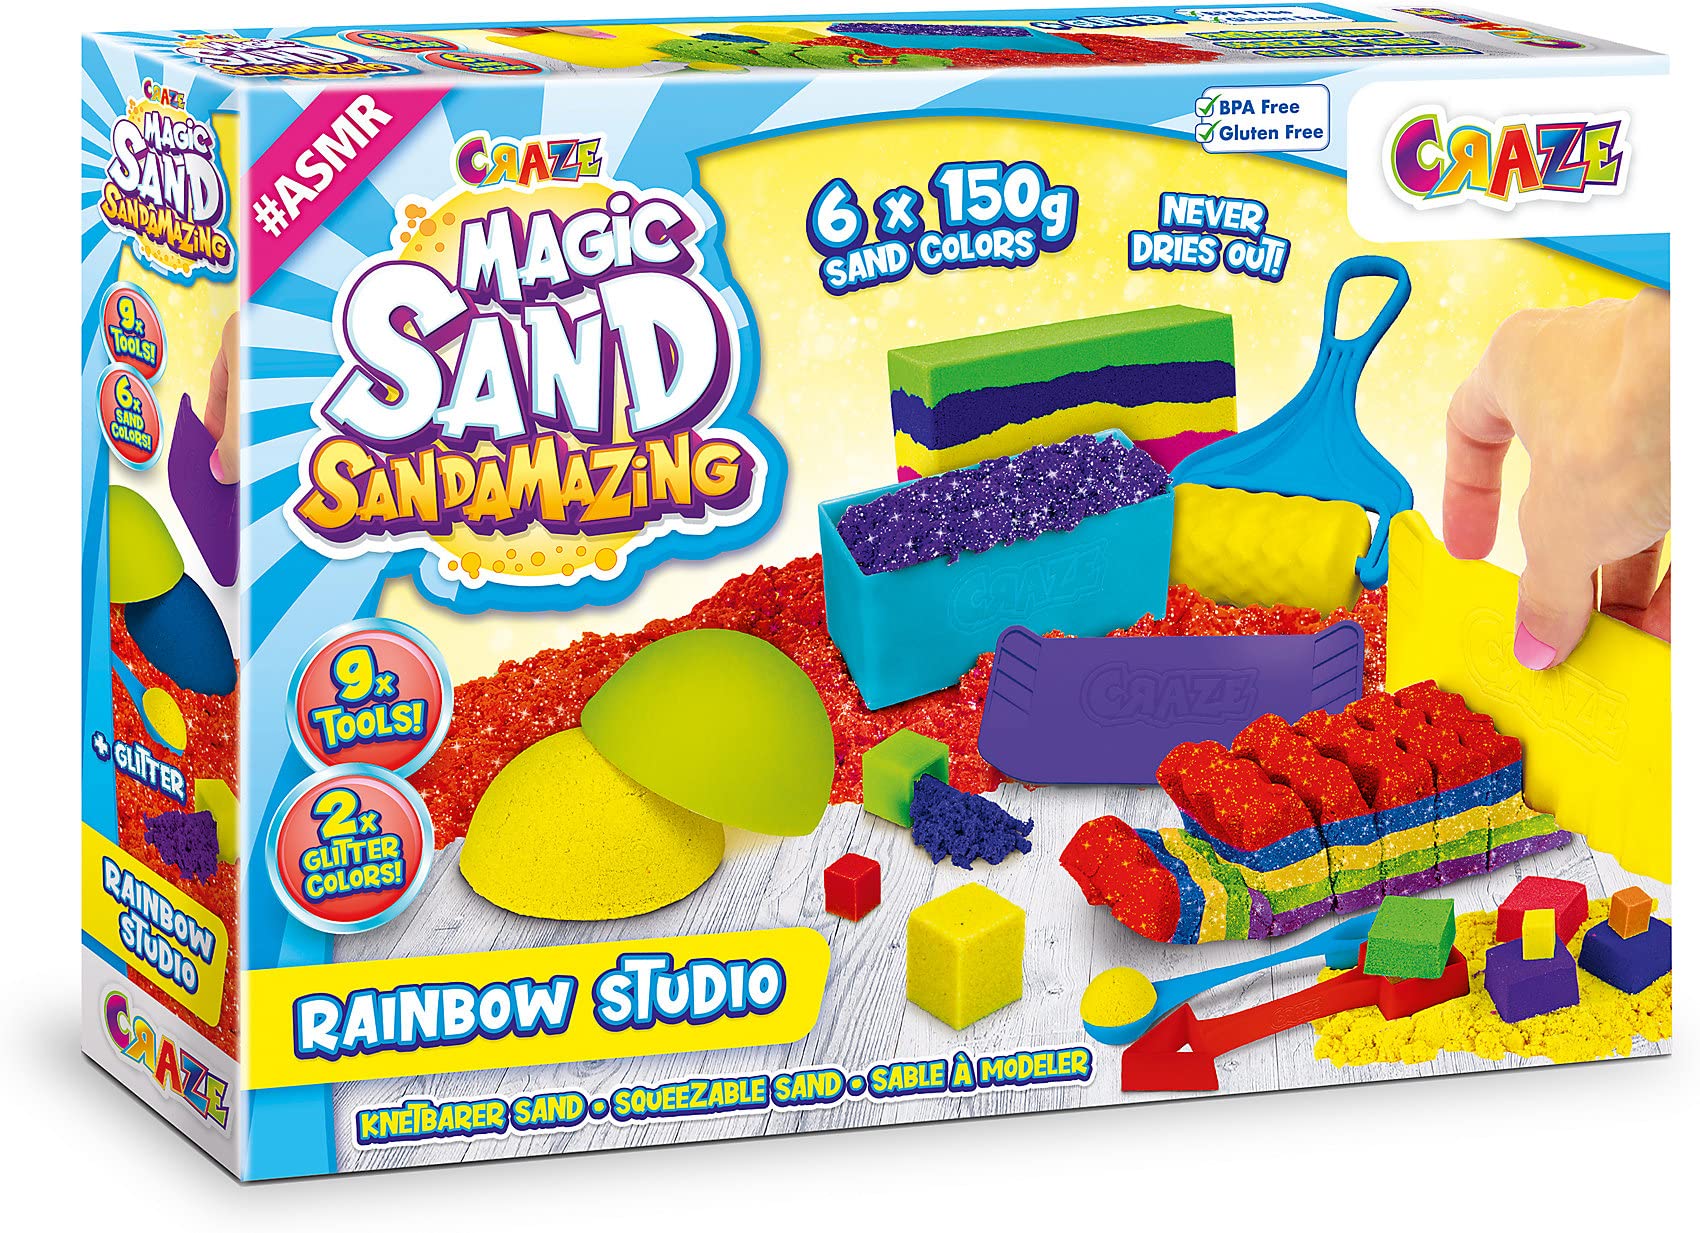 Promo CRAZE MAGIC SAND Sandamazing Studio arc-en-ciel Sable magique Enfant 900g Sable cinétique 6 couleurs avec 11 accessoires Sable à modeler Activités manuelles pour enfants 32435 9gljzlfFT tout pour vous